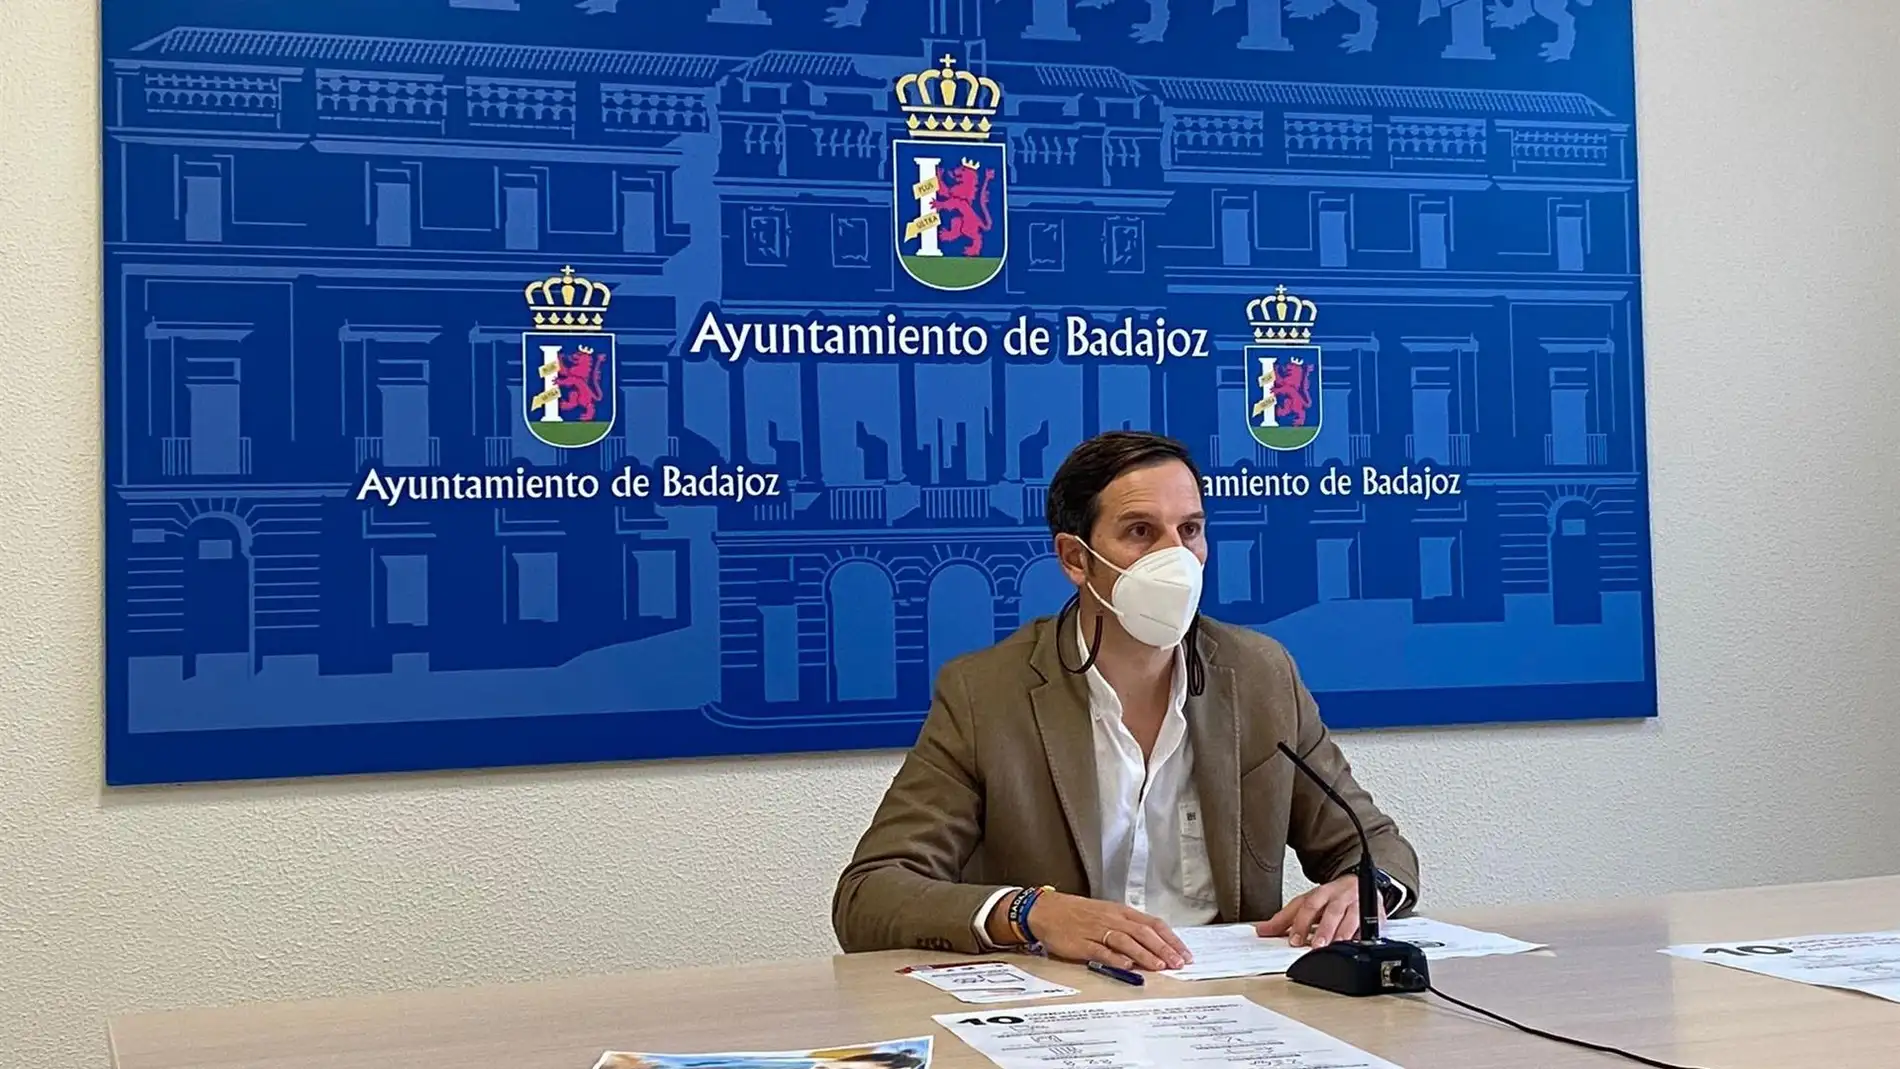 El Ayuntamiento de Badajoz organiza dos campañas de sensibilización y acciones educativas o deportivas por el 25N